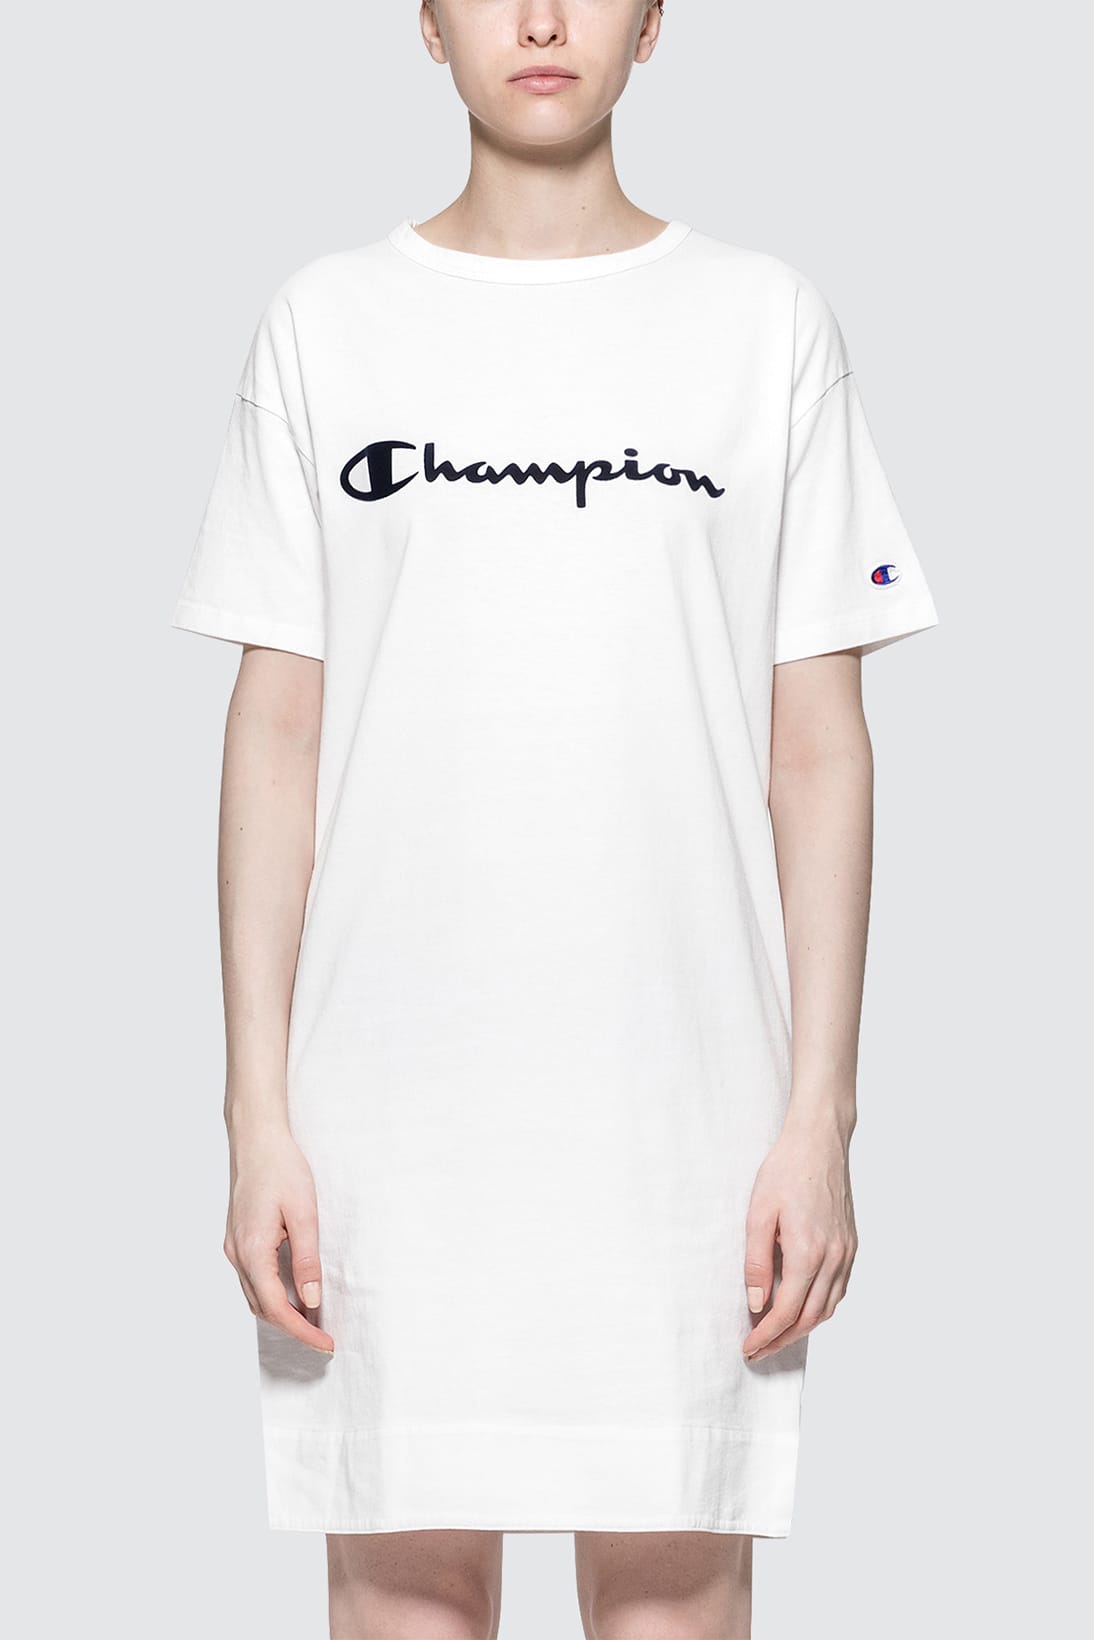 oversized champion t shirt